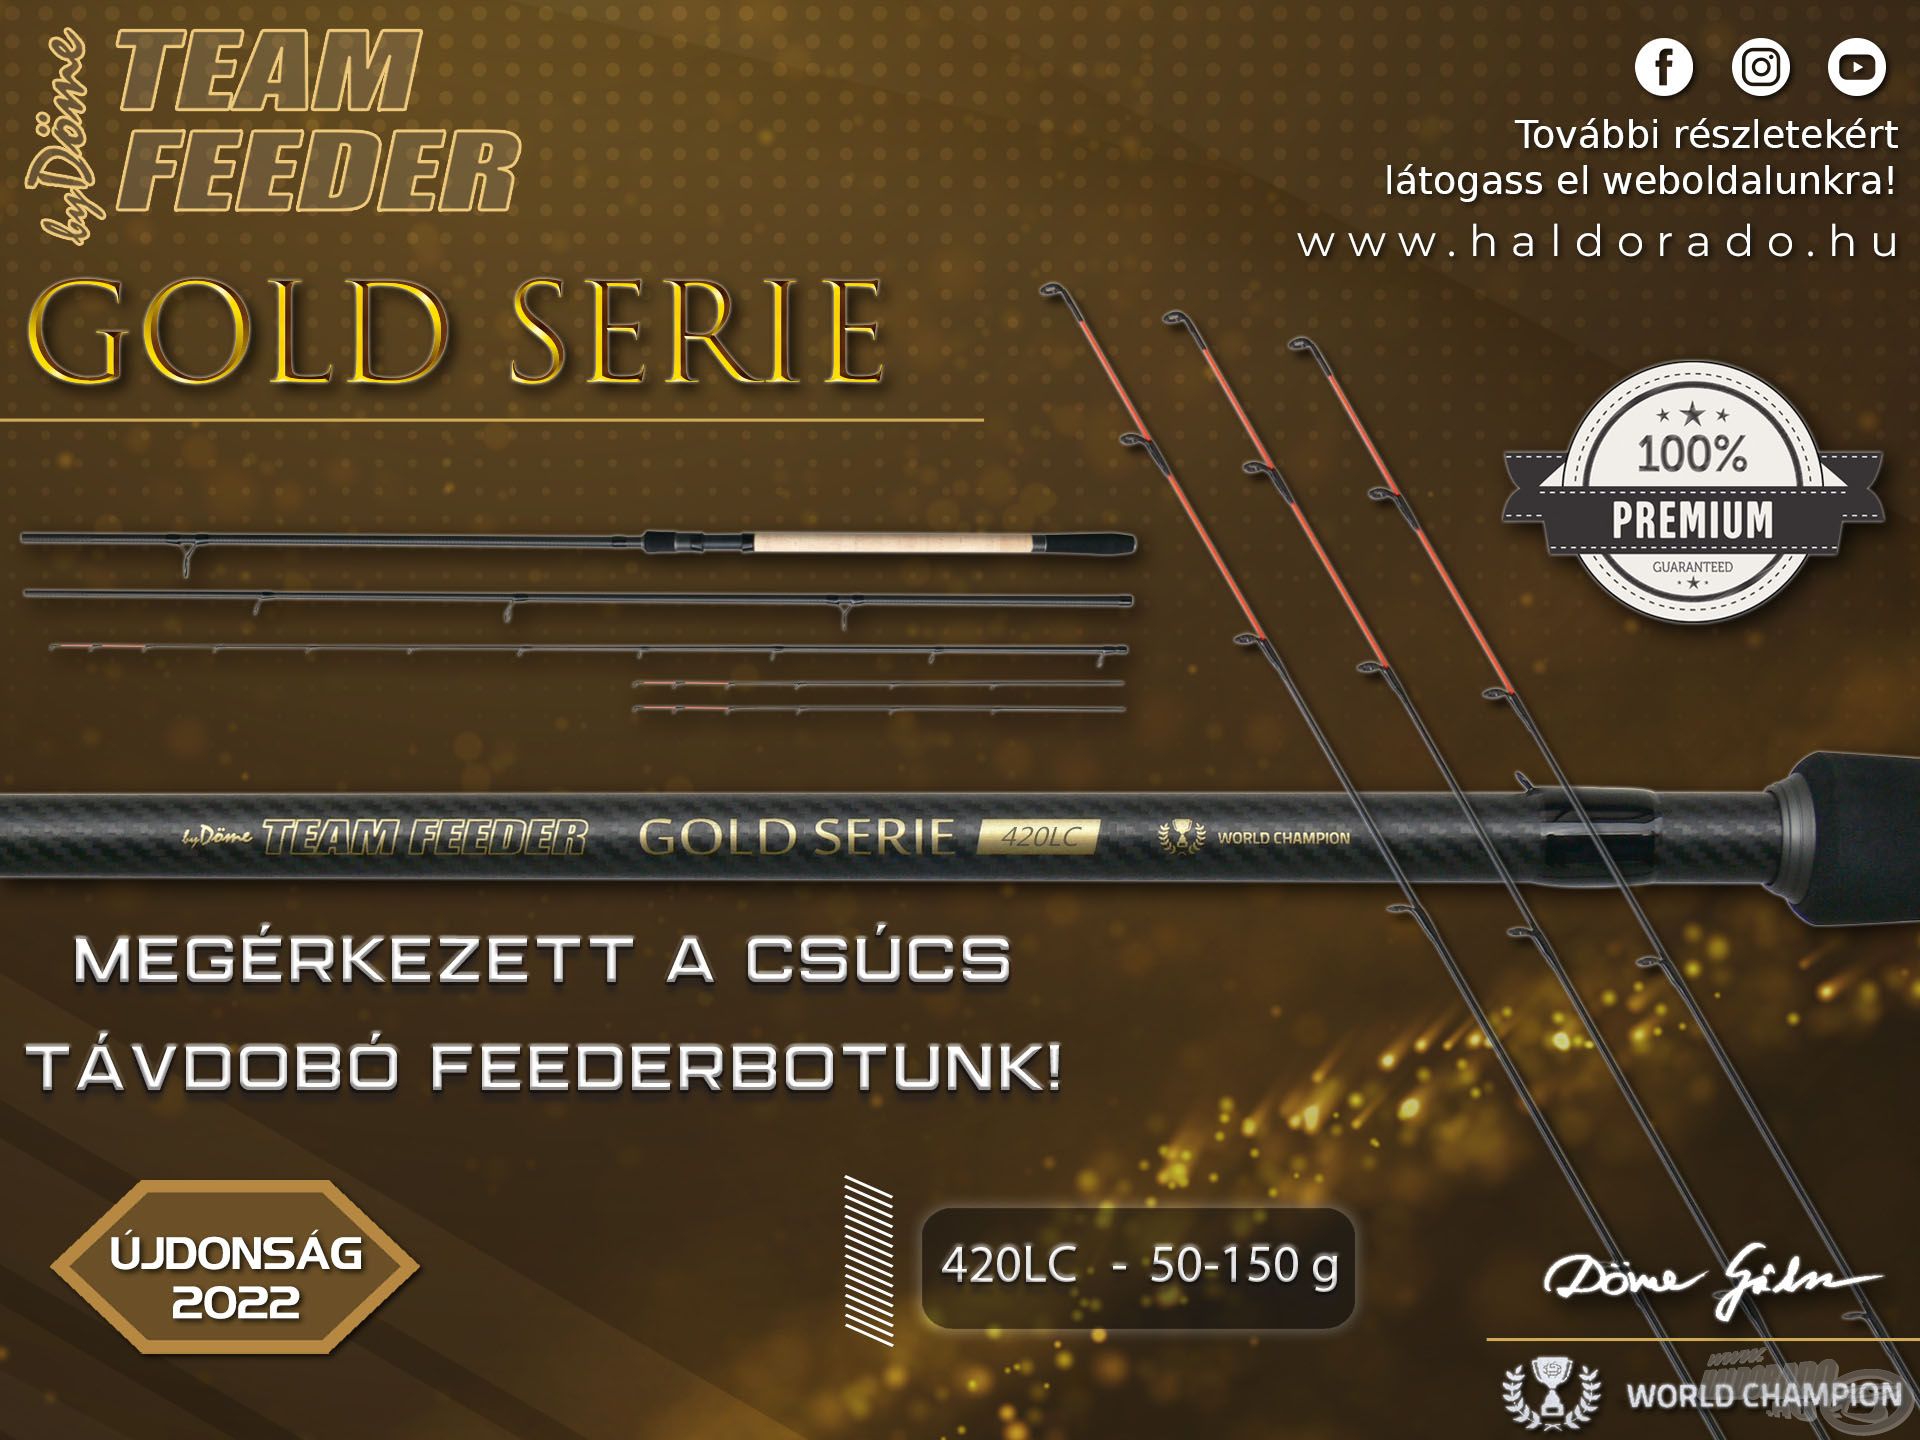 Az egyik legizgalmasabb bot újdonságunk a By Döme TEAM FEEDER Gold Serie 420LC